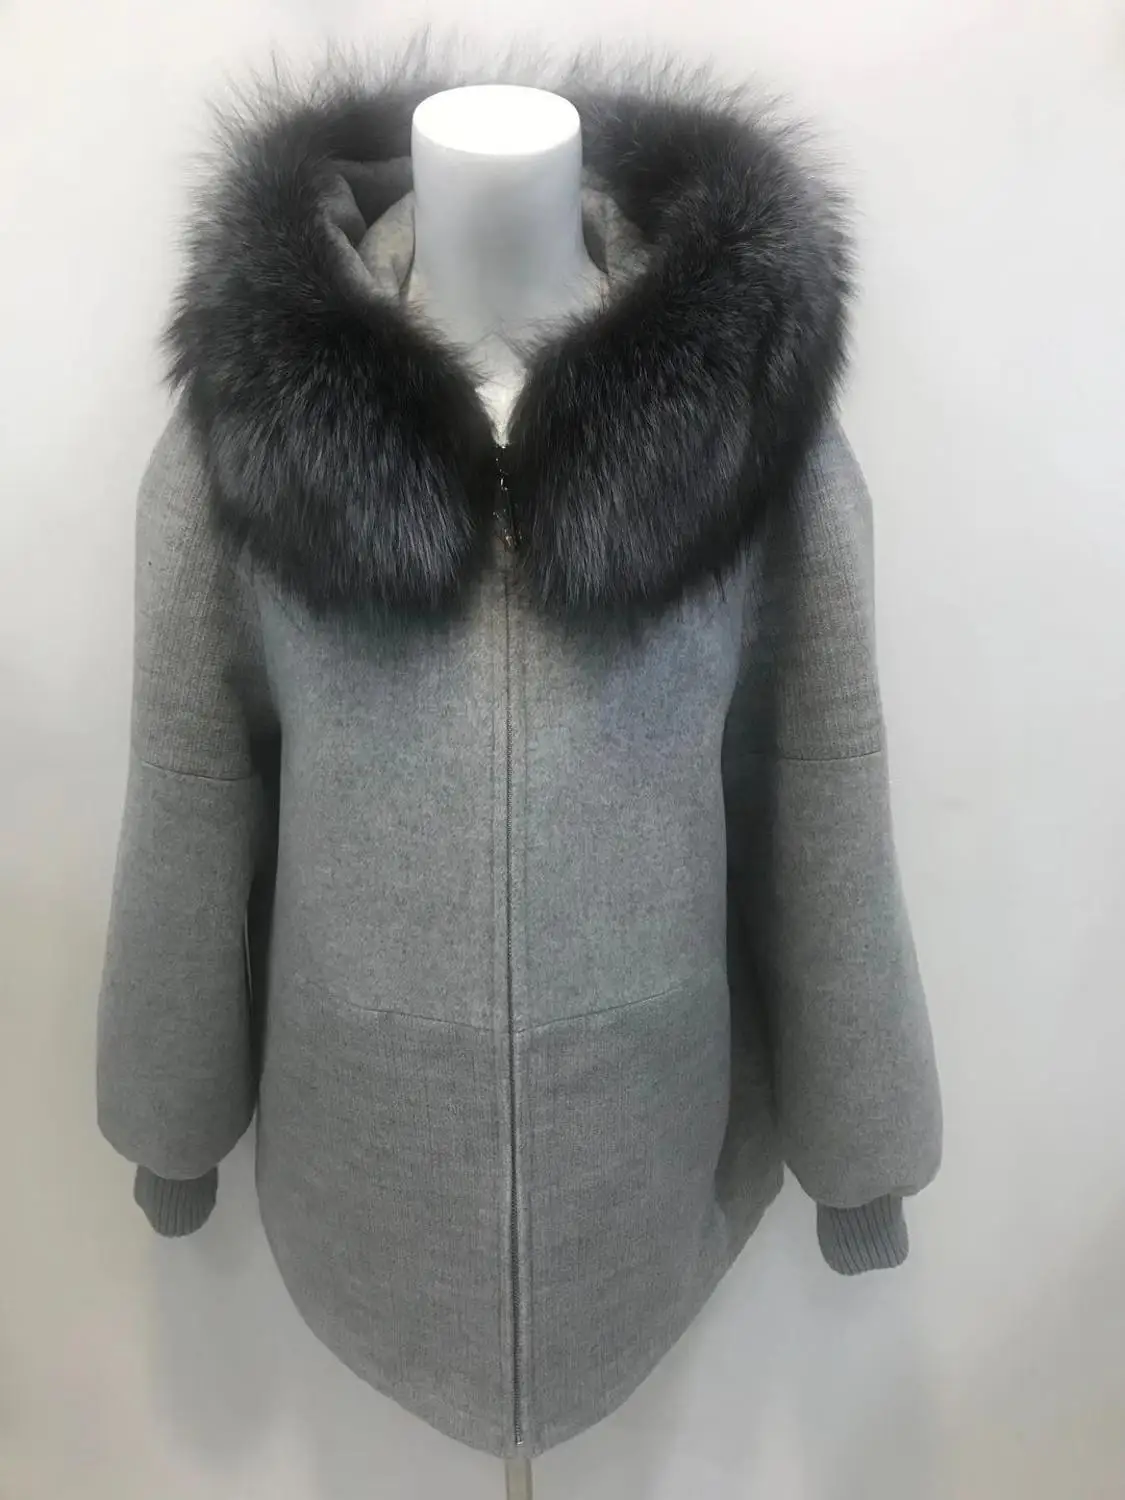 AMSIIKE женское кашемировое пальто. натуральный Лисий воротник зимнее утепленное Женское пальто. Деталь из искусственного меха лисы можно снять;